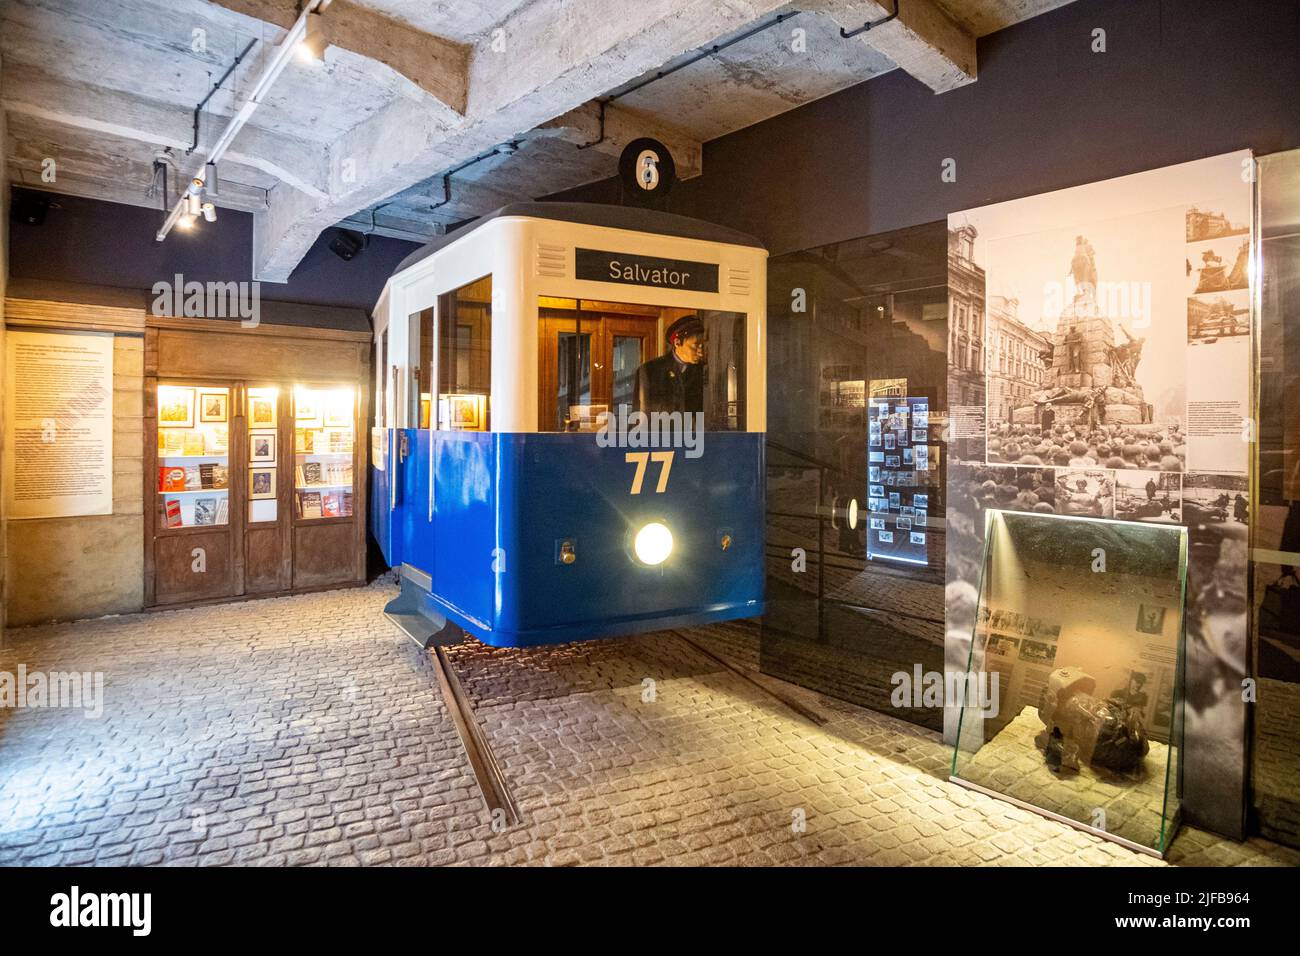 Polen, Kleinpolen, Krakau, von der UNESCO zum Weltkulturerbe erklärt, Podgorze, das ehemalige jüdische Ghetto, die ehemalige Oskar-Schindler-Fabrik heute ein Museum Stockfoto